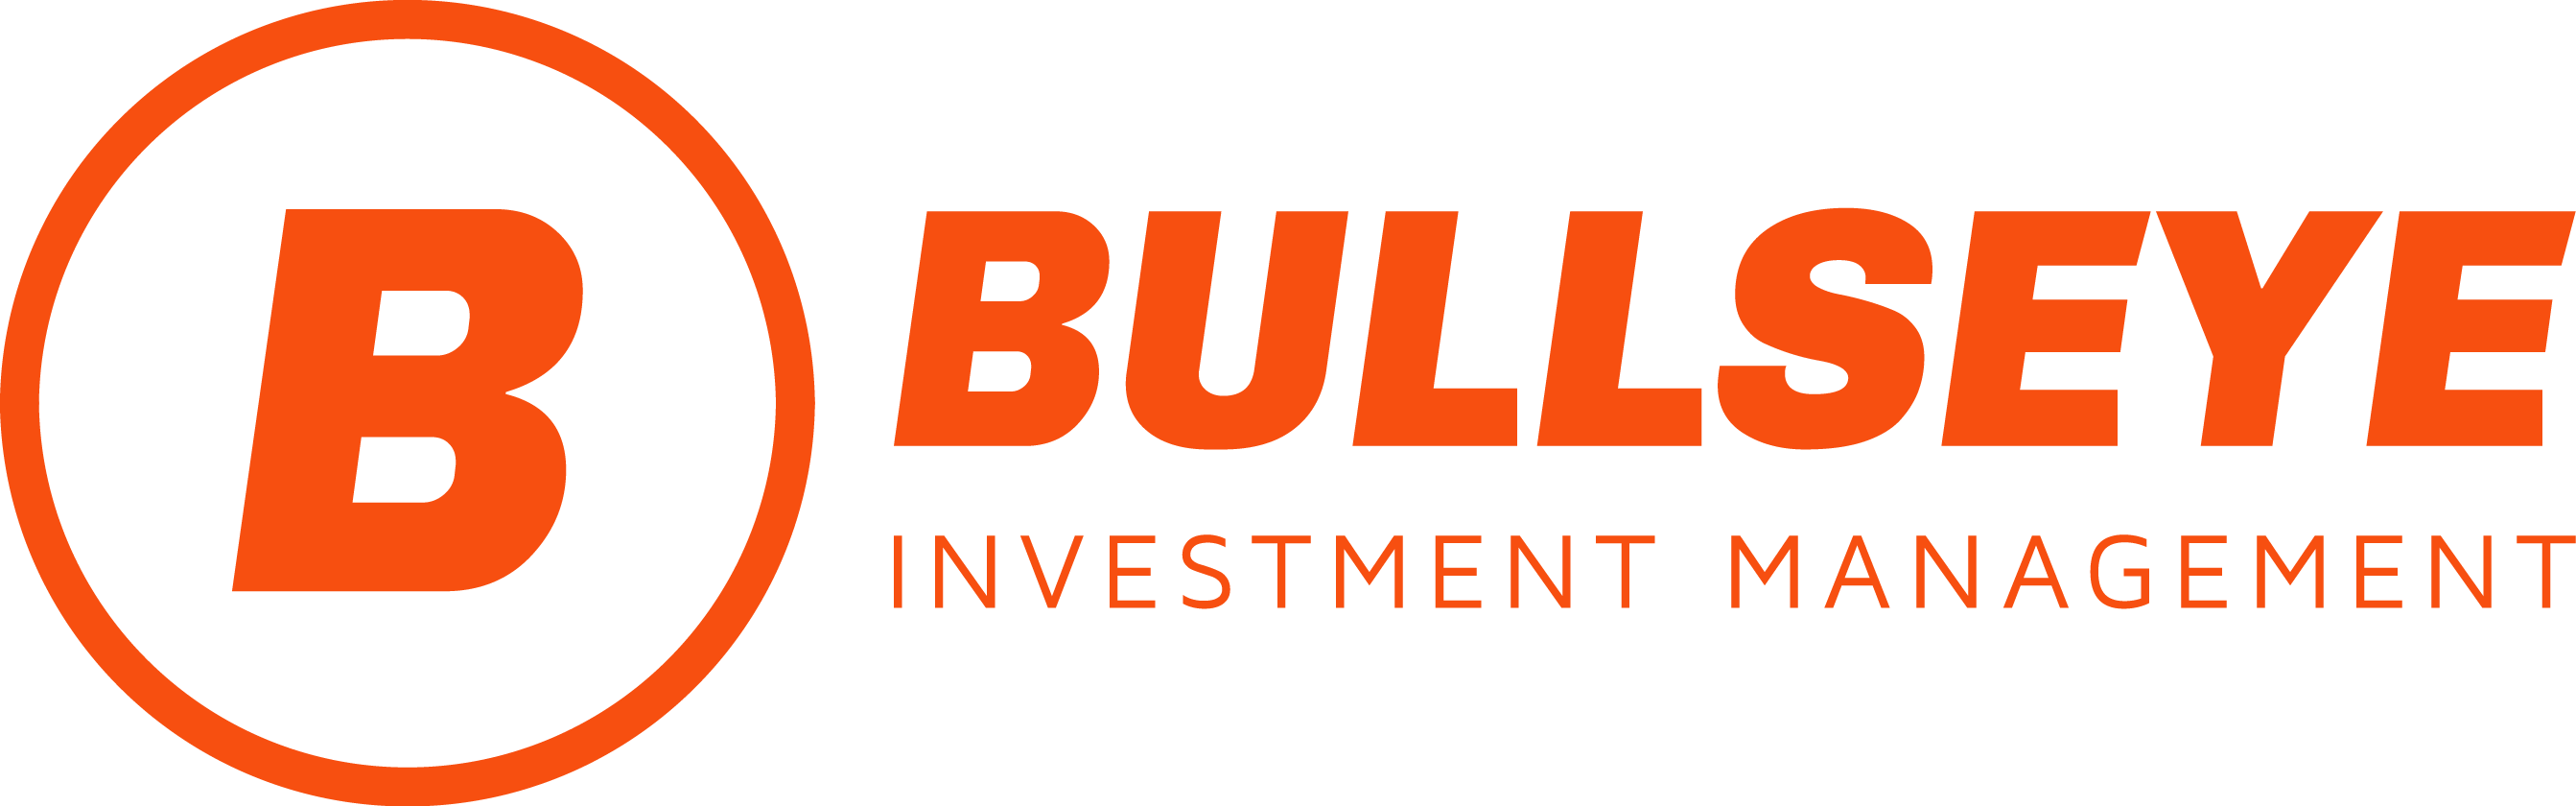 Bullseye Investment Management